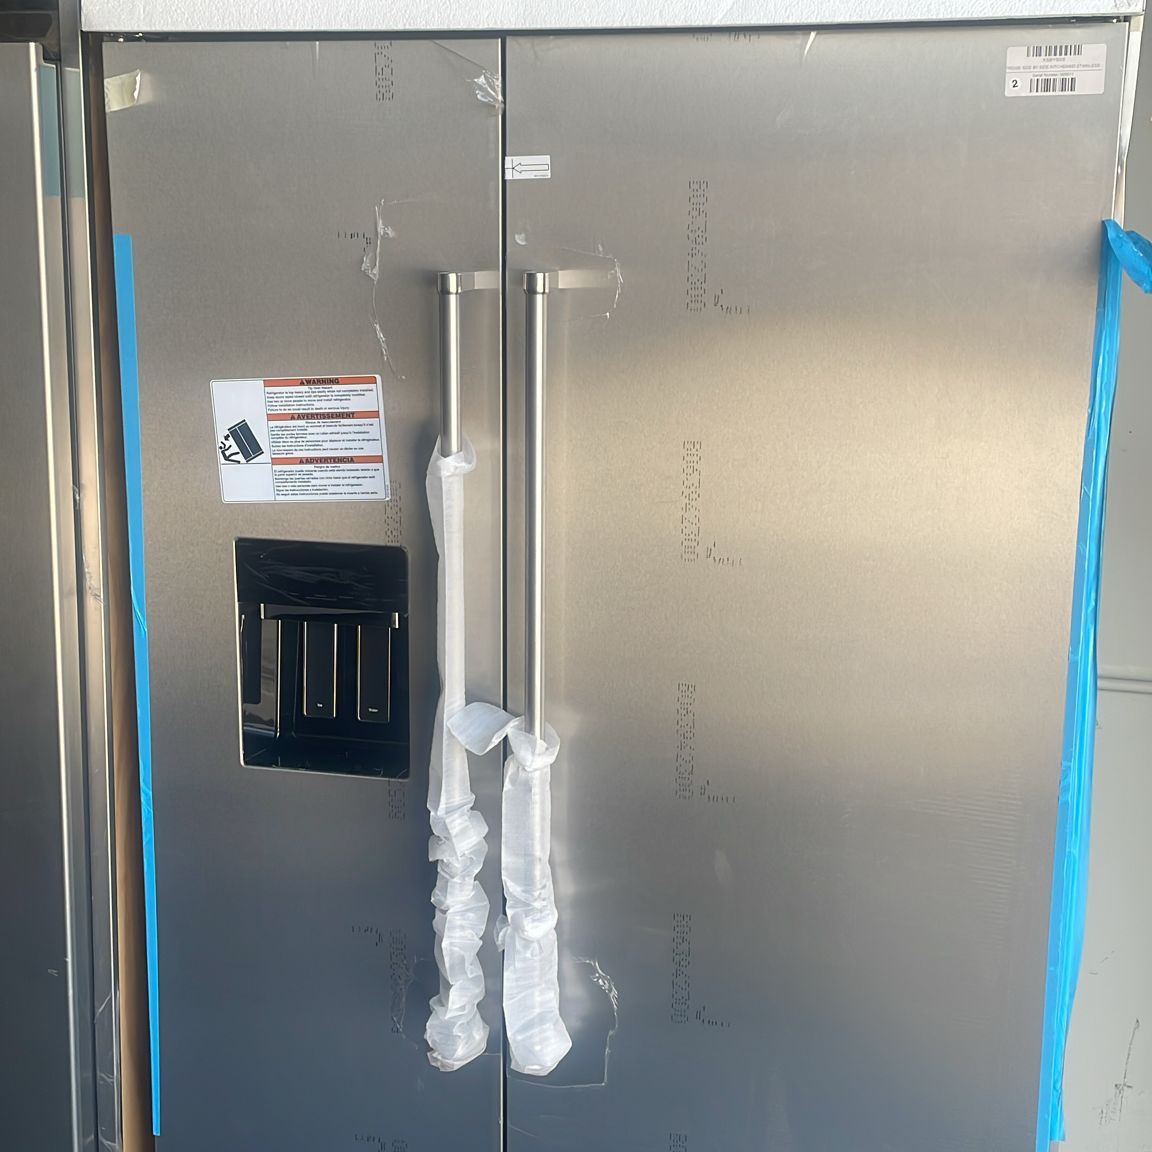 Refrigerator Build in 48 Inch Kitchen Aid 